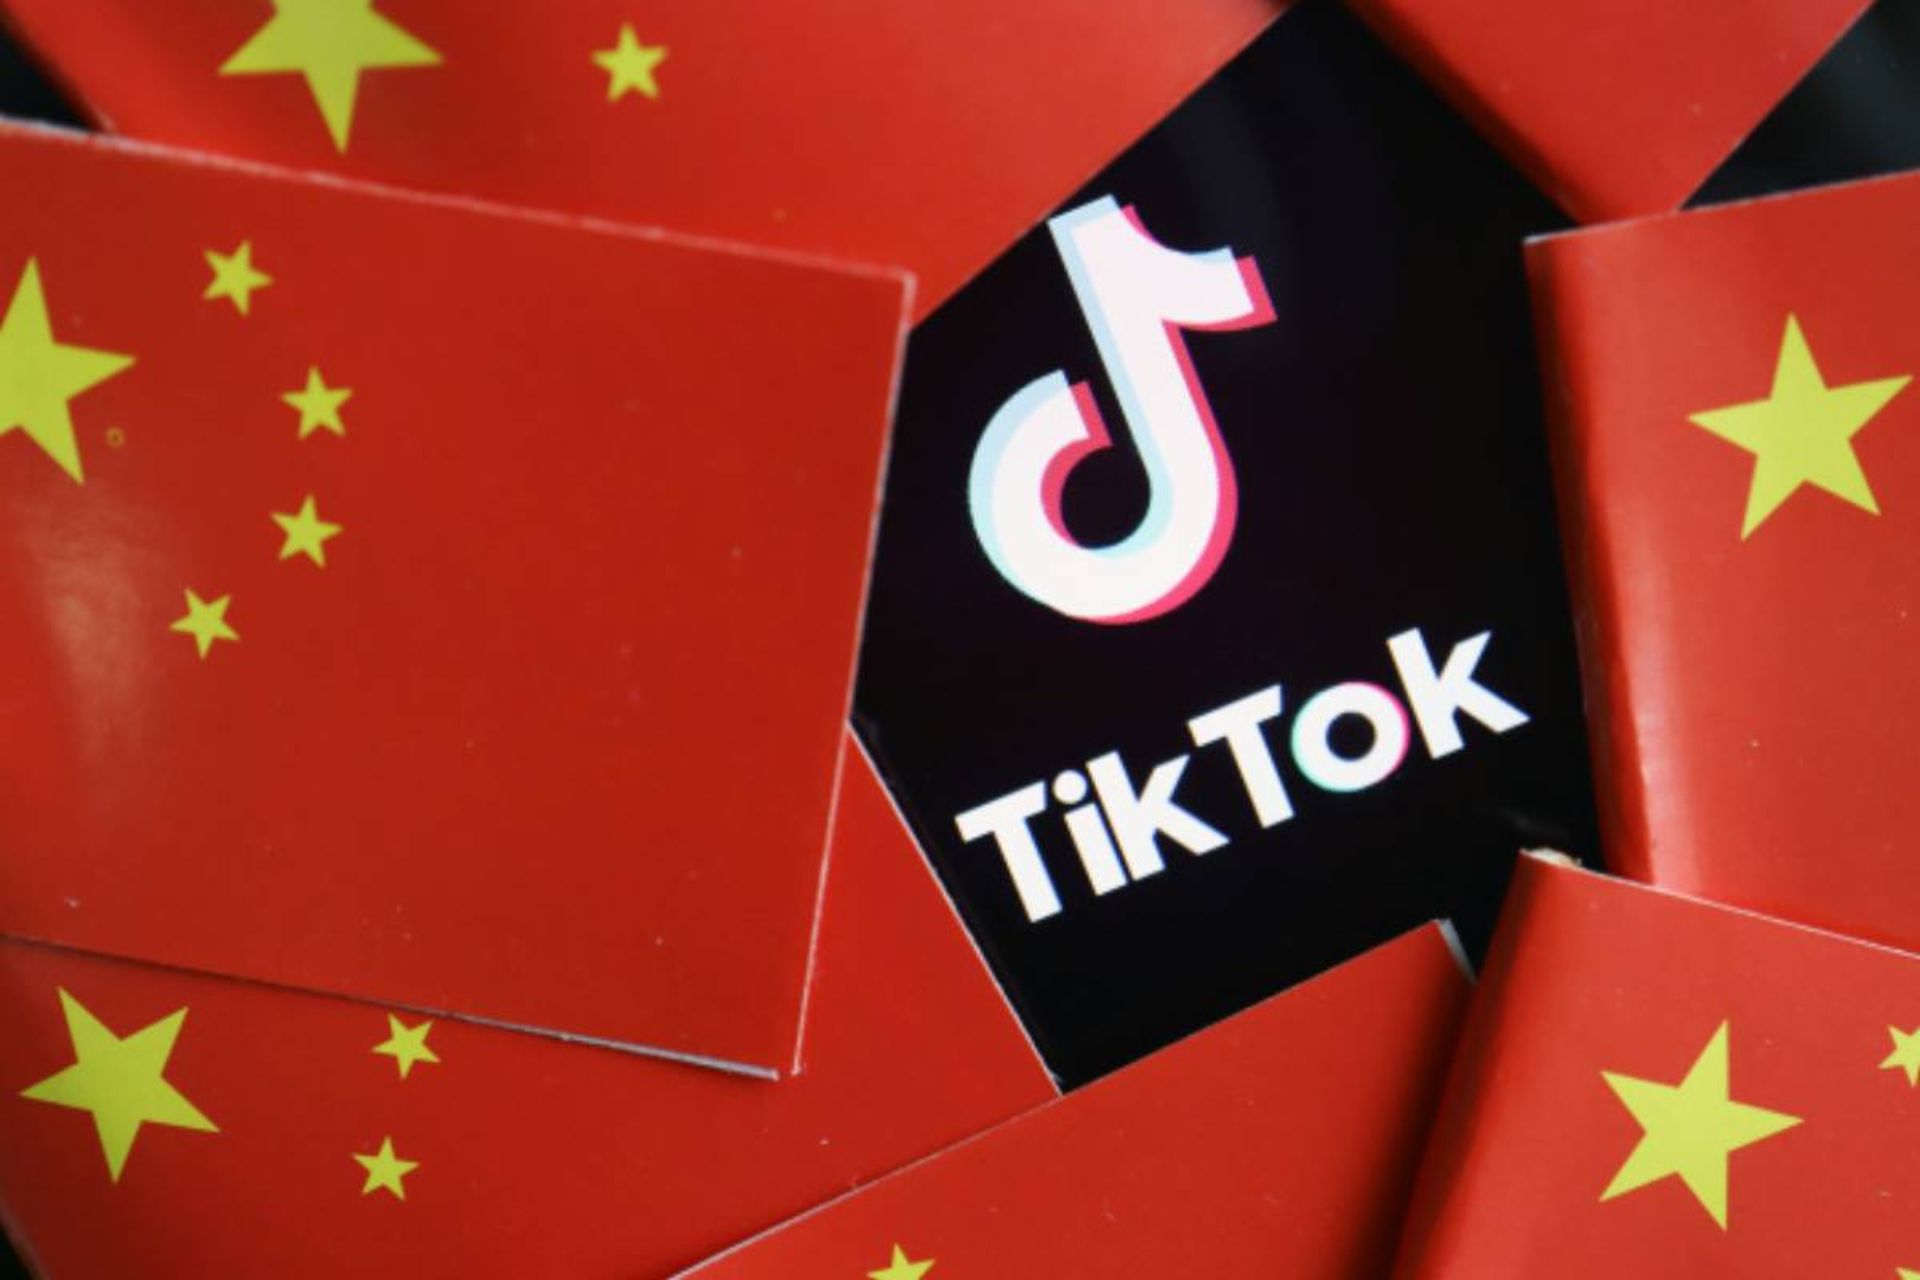 پیشگیری دولت چین از فروش تیک تاک